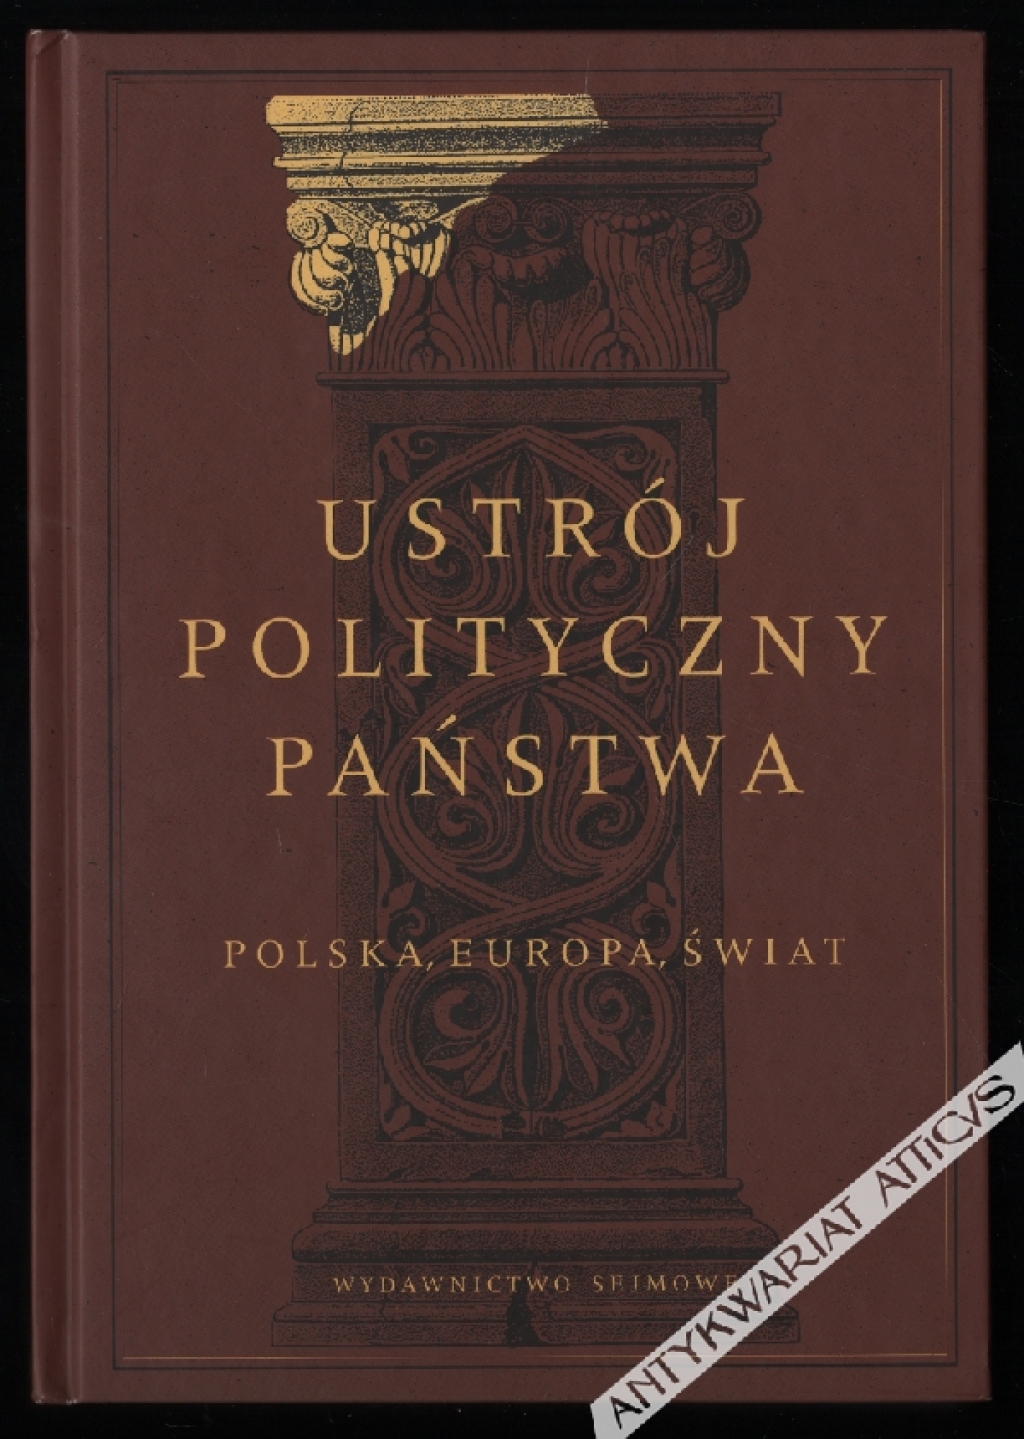 Ustrój polityczny państwa. Polska, Europa, świat [zbiór tekstów]